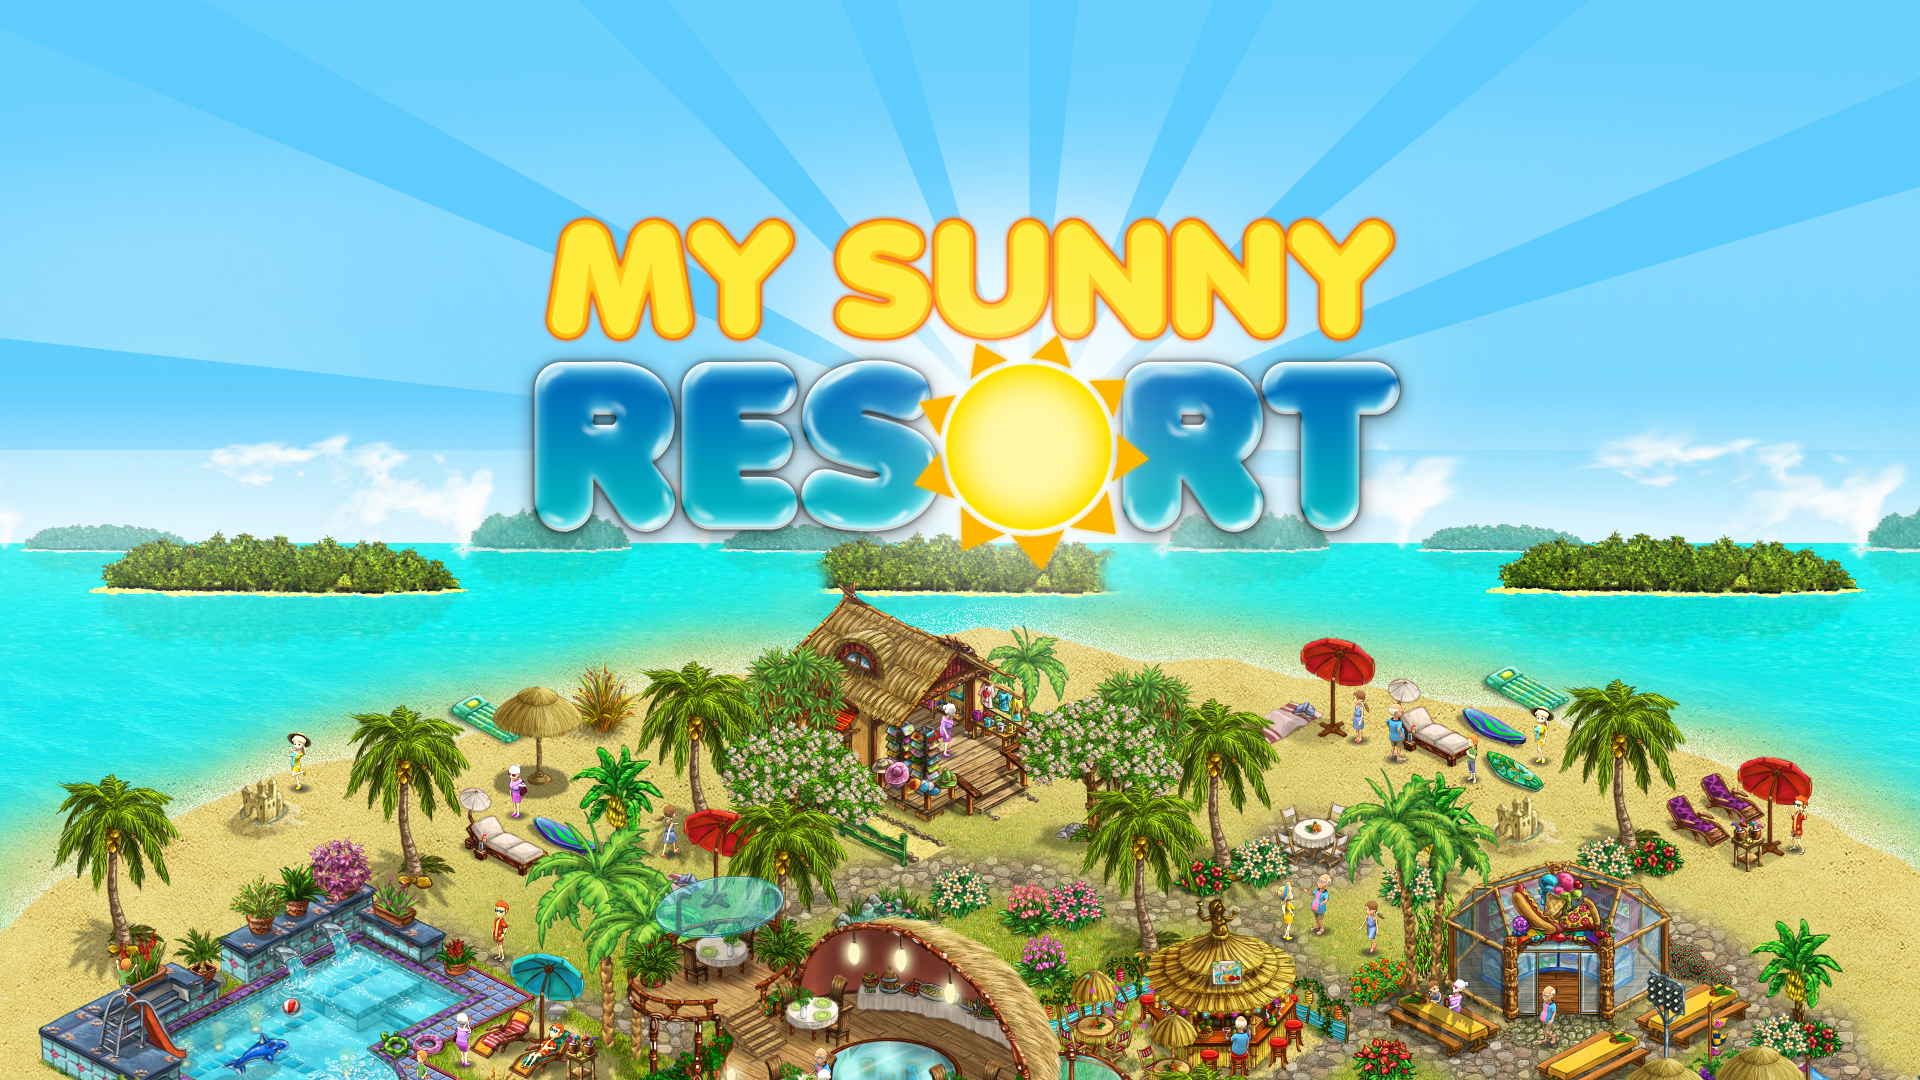 My Sunny Resort – neues Projekt von upjers und KA Games